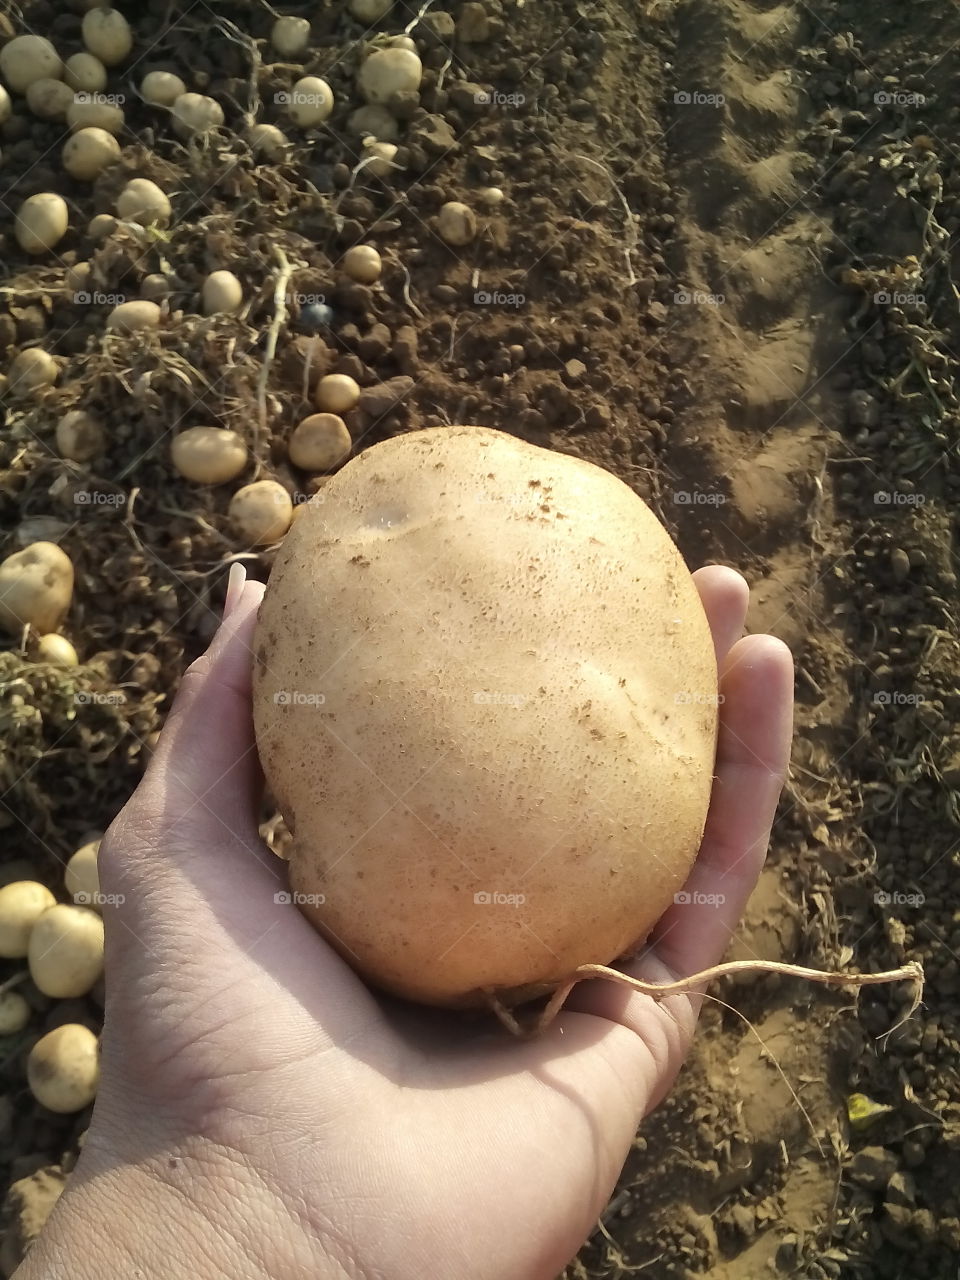 this photo is white potato photo. the potato name of FC-5 .